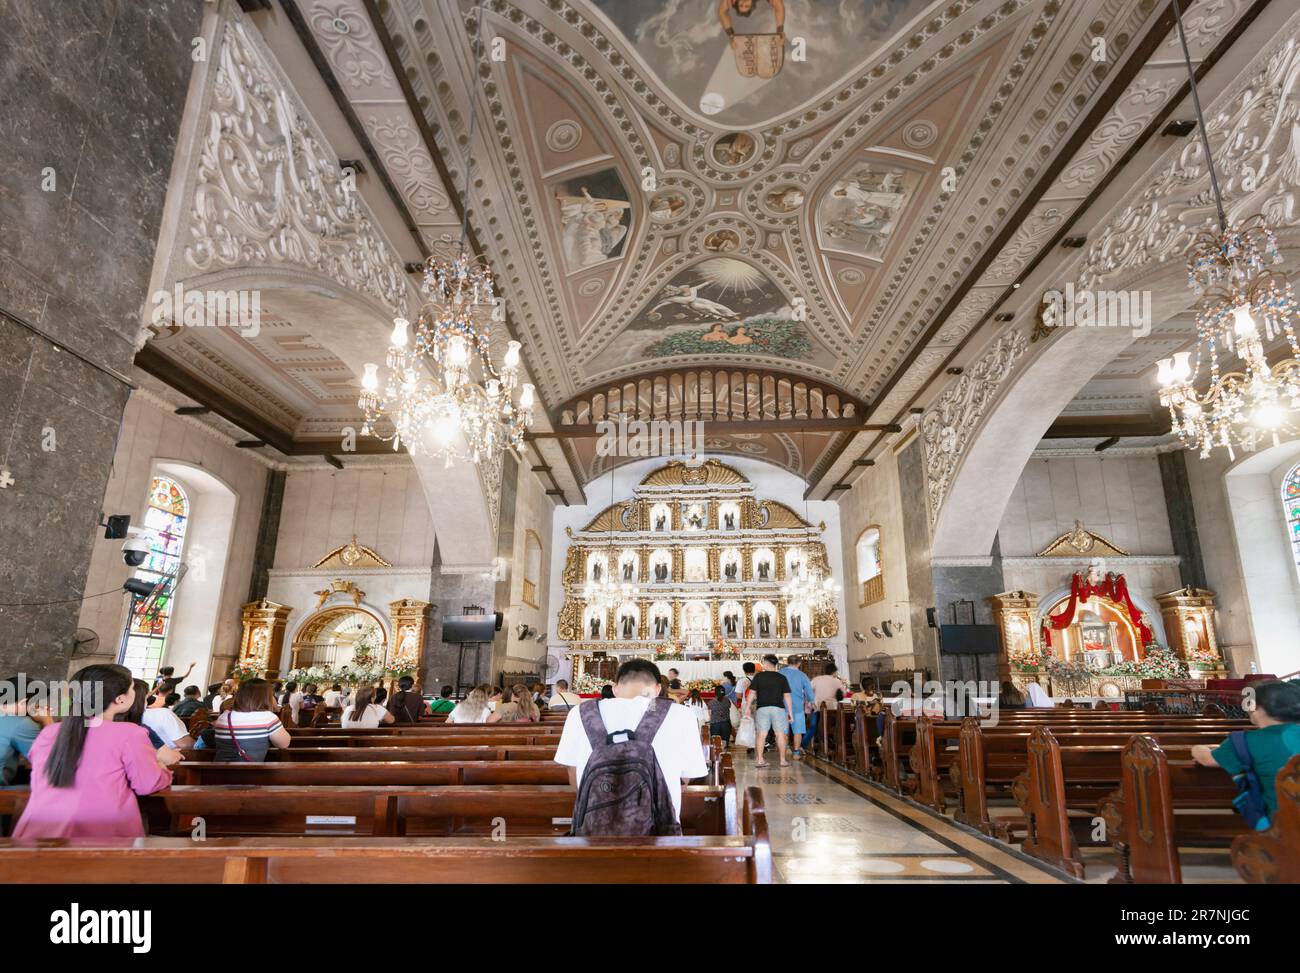 Cebu ville,Cebu,Philippines-17 janvier 2023: Beaucoup de catholiques philippins dévorés,viennent à genoux,prient et remercient,à ce bâtiment important religieusement,f Banque D'Images